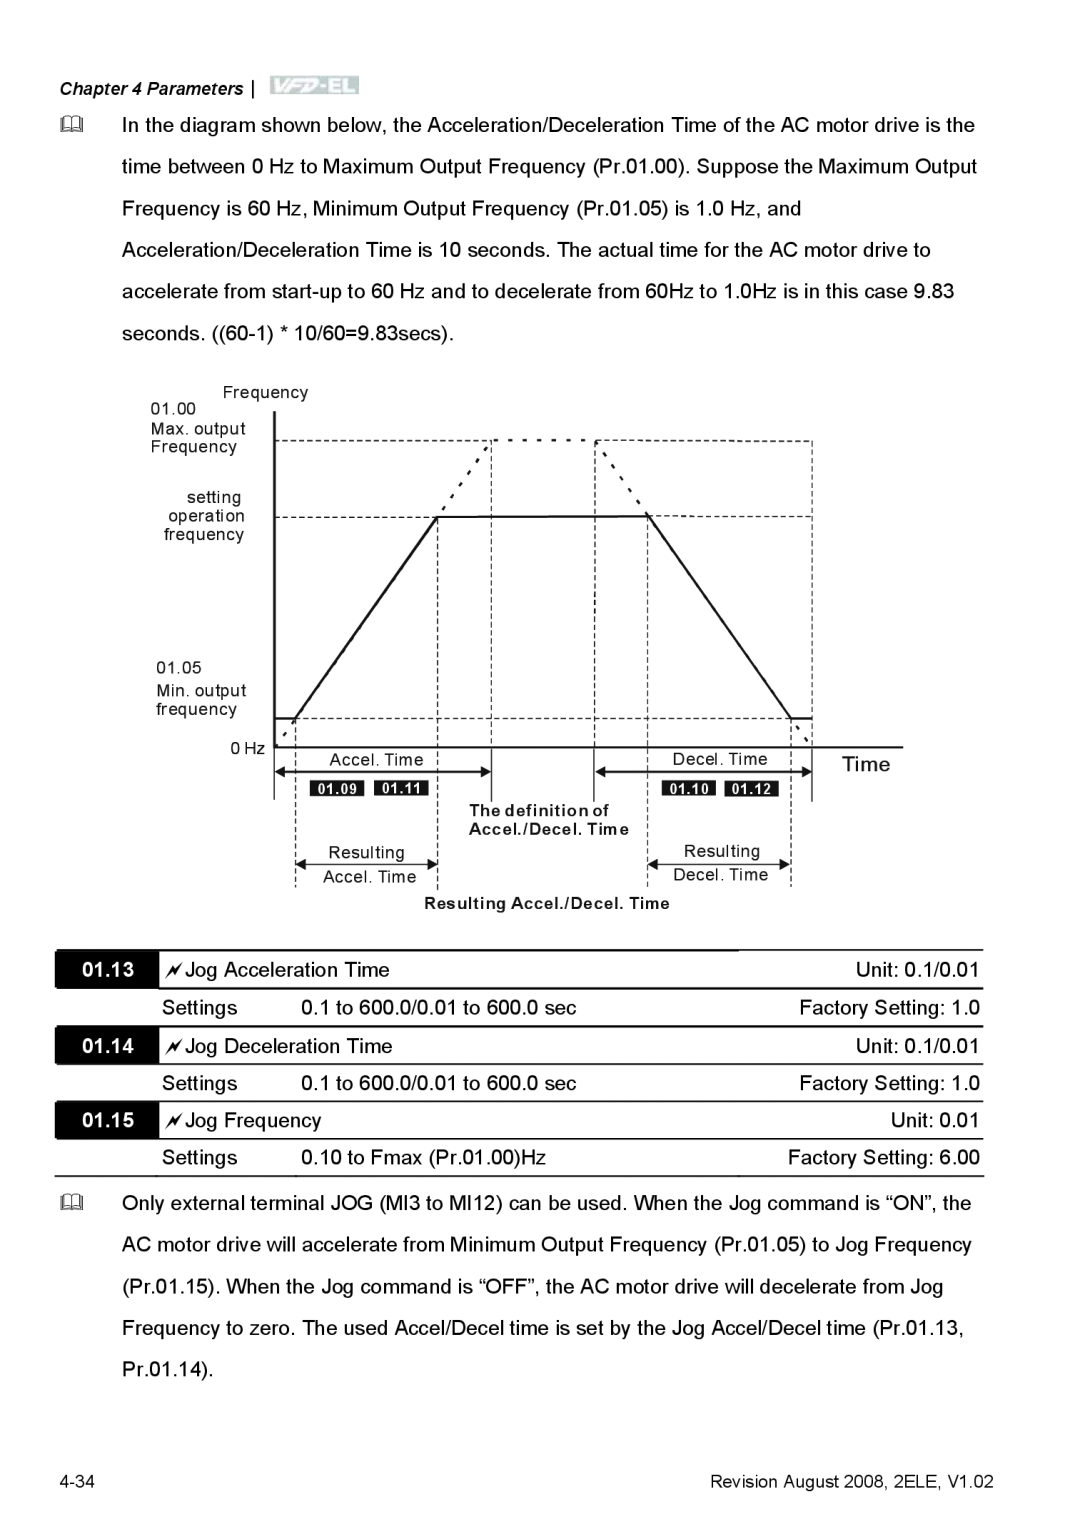 Delta Electronics VFD-EL manual 01.13, 01.14, 01.15, The definition of Accel./Decel. Time, Resulting Accel./Decel. Time 